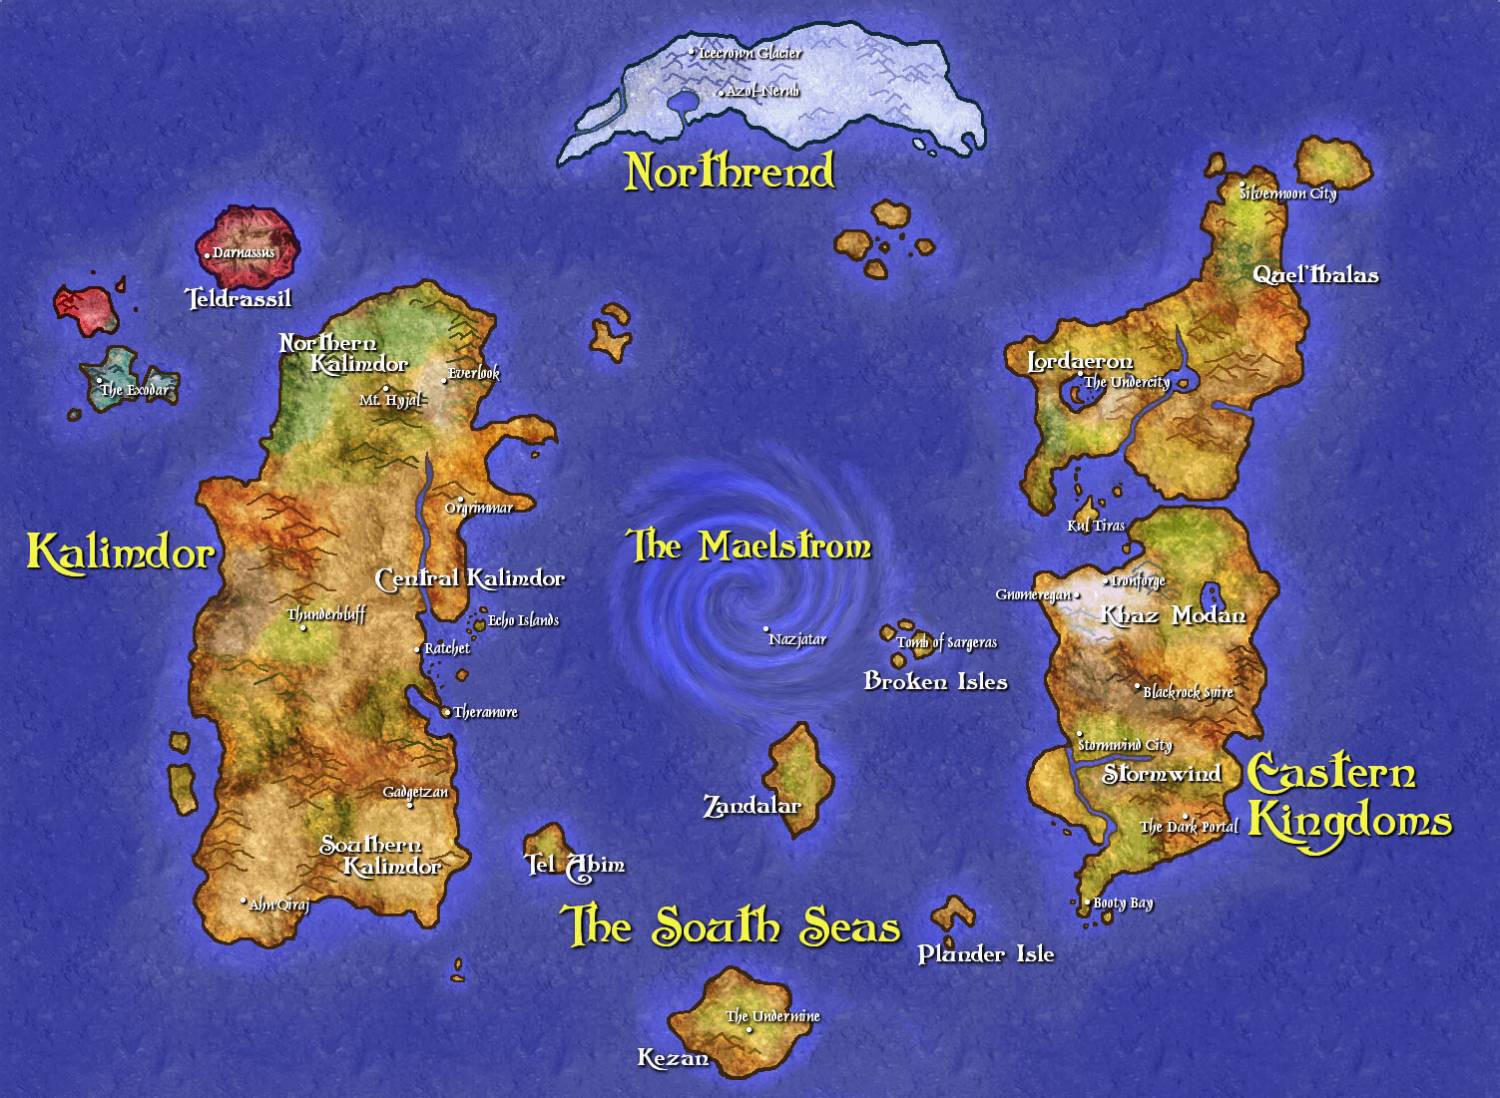 5. Вселенная Warcraft. Несуществующие миры, карты, фэнтези